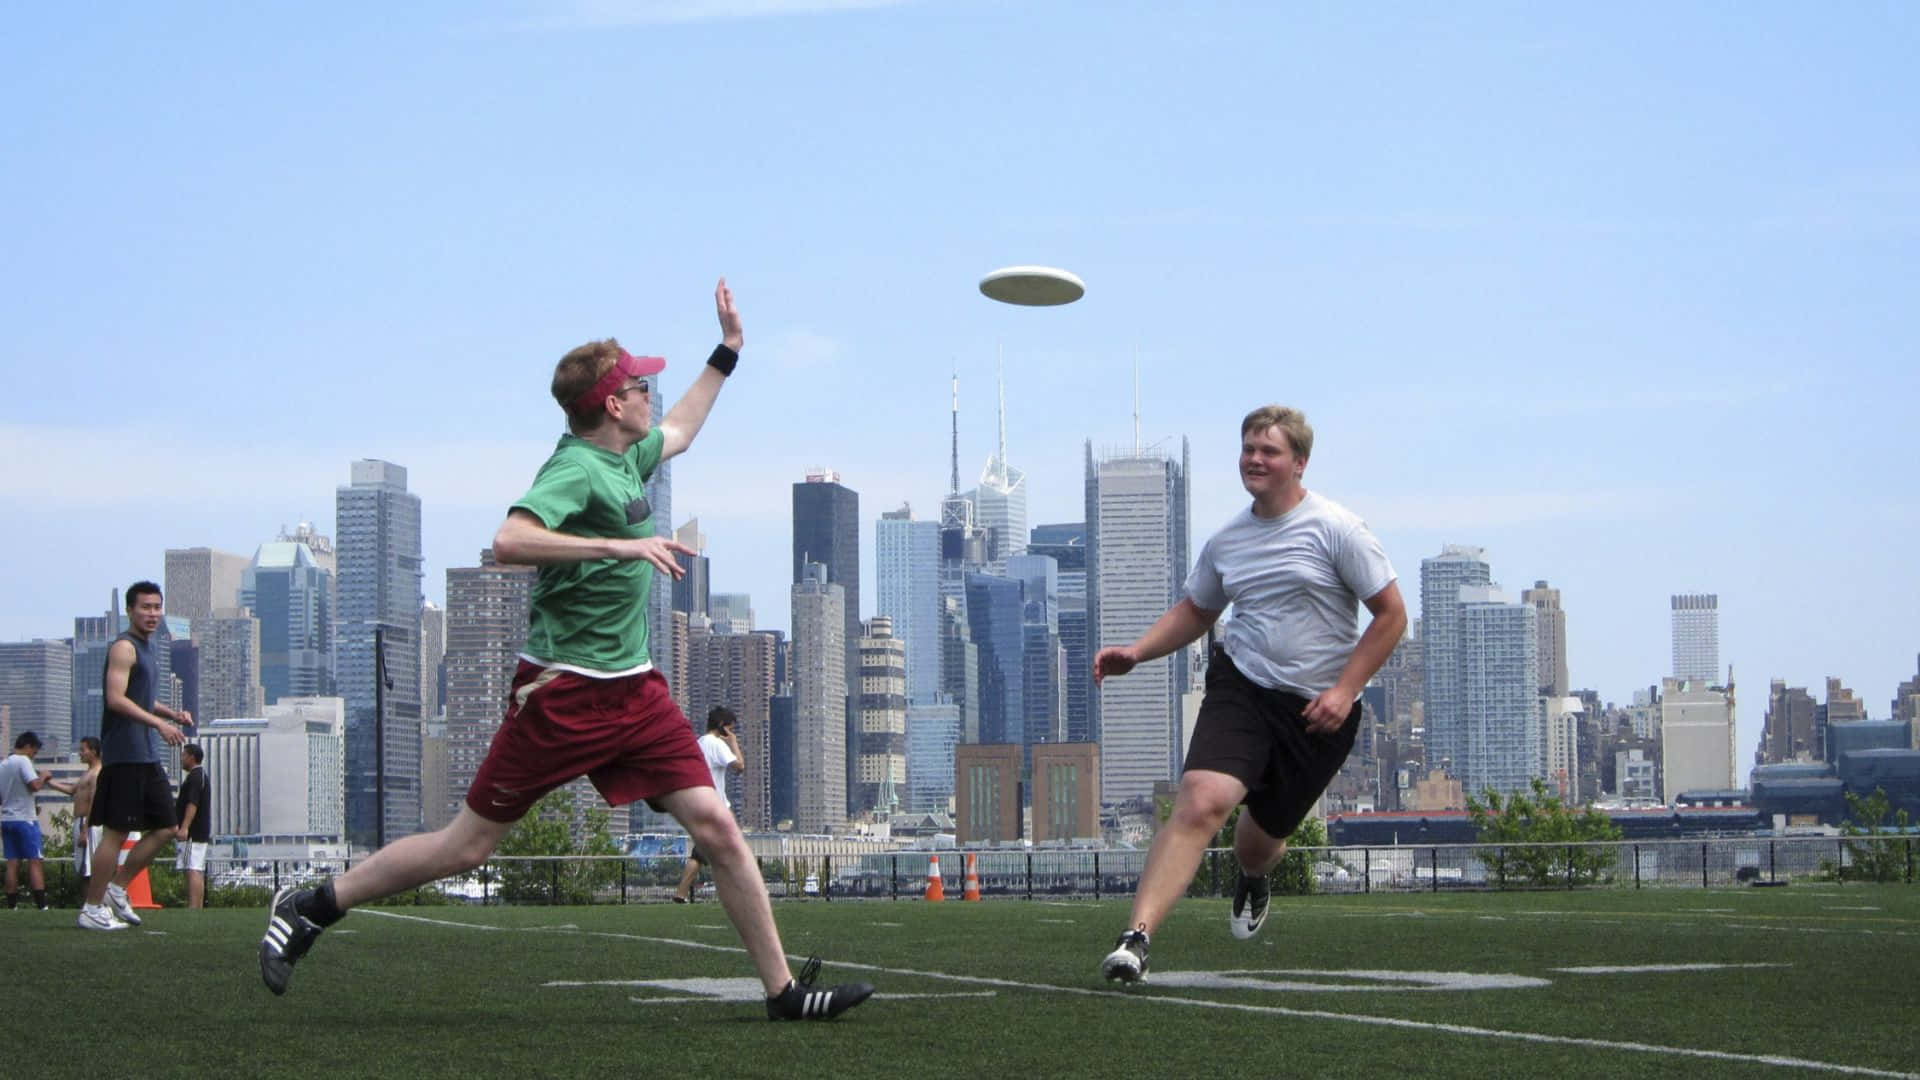 Erlebensie Ultimative Zufriedenheit Und Begeisterung Mit Einem Spiel Von Hd Frisbee